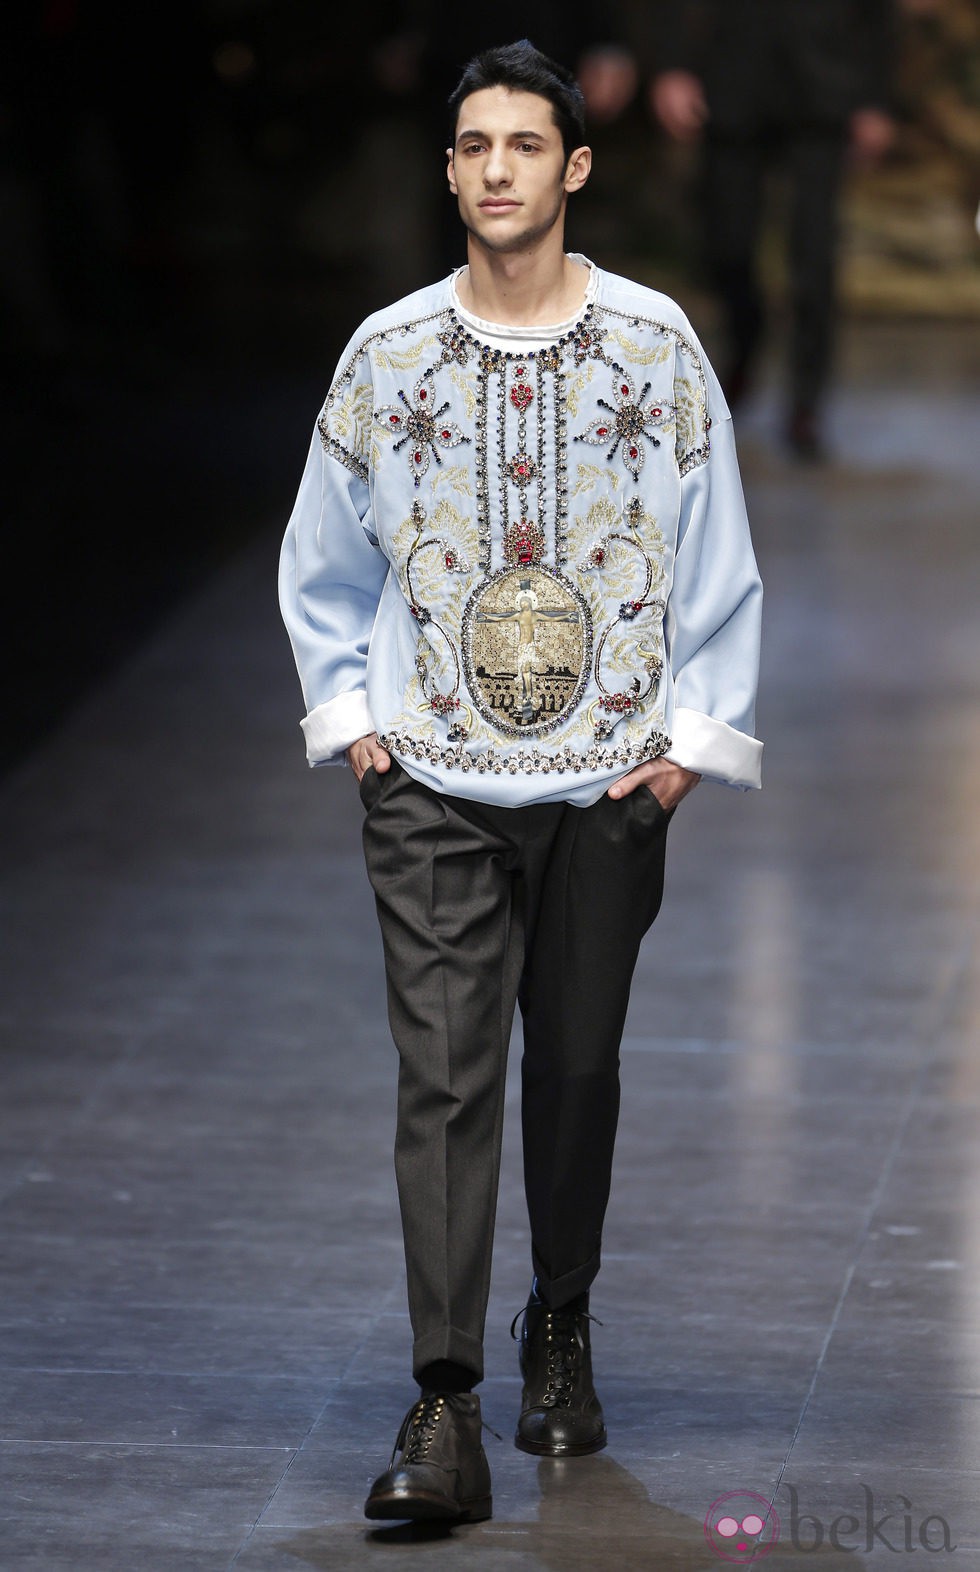 Estampado religioso en la colección otoño/invierno 2013/2014 de Dolce & Gabbana en la Semana de la Moda Masculina de Milán